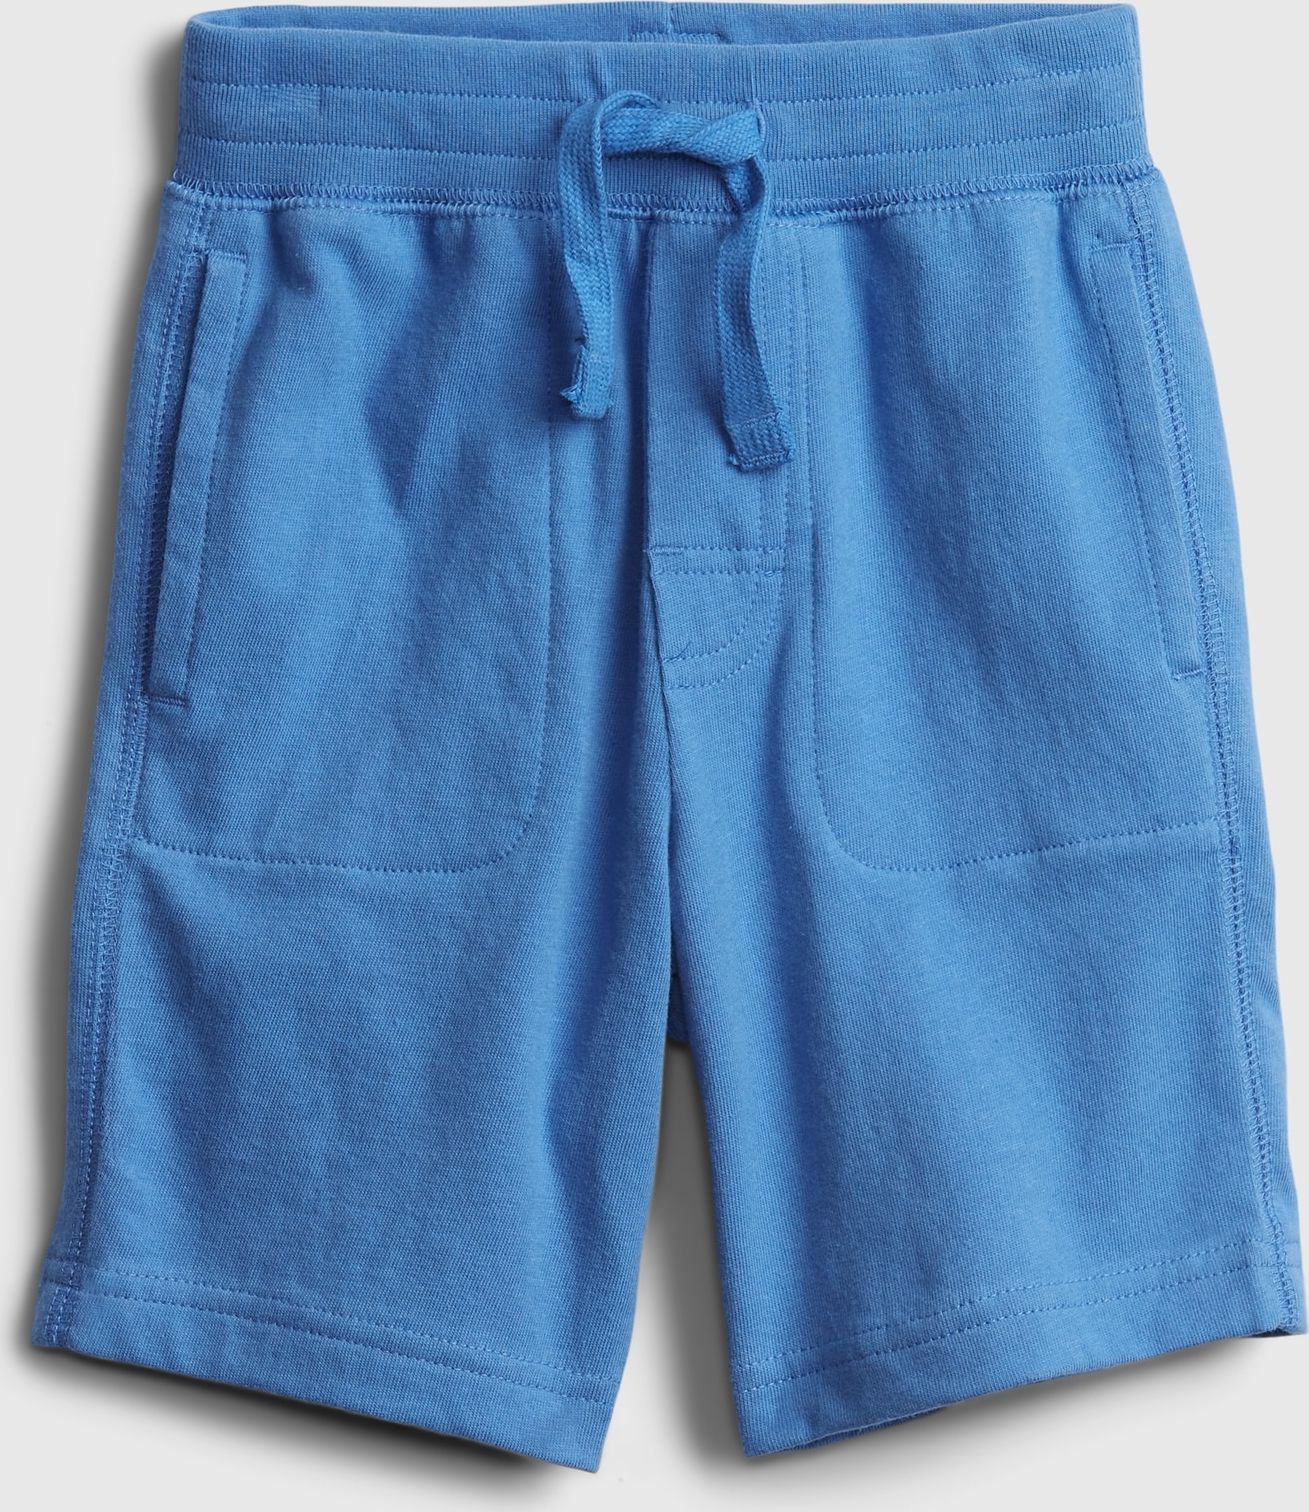 GAP modré dětské kraťasy 100% organic cotton mix and match pull-on shorts - 3YRS - obrázek 1